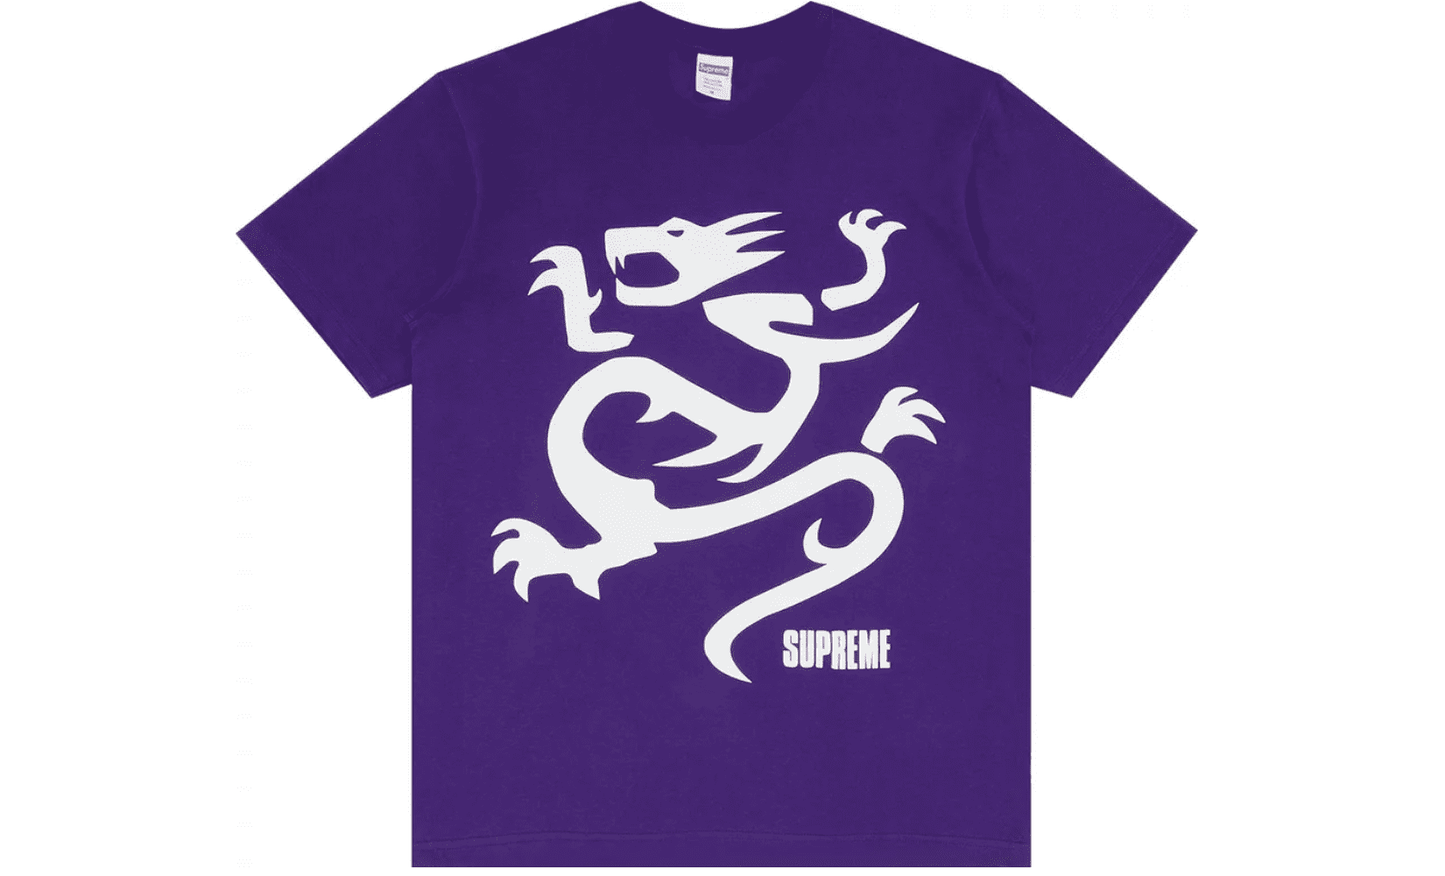 Supreme Mobb Deep Dragon Tee Purple